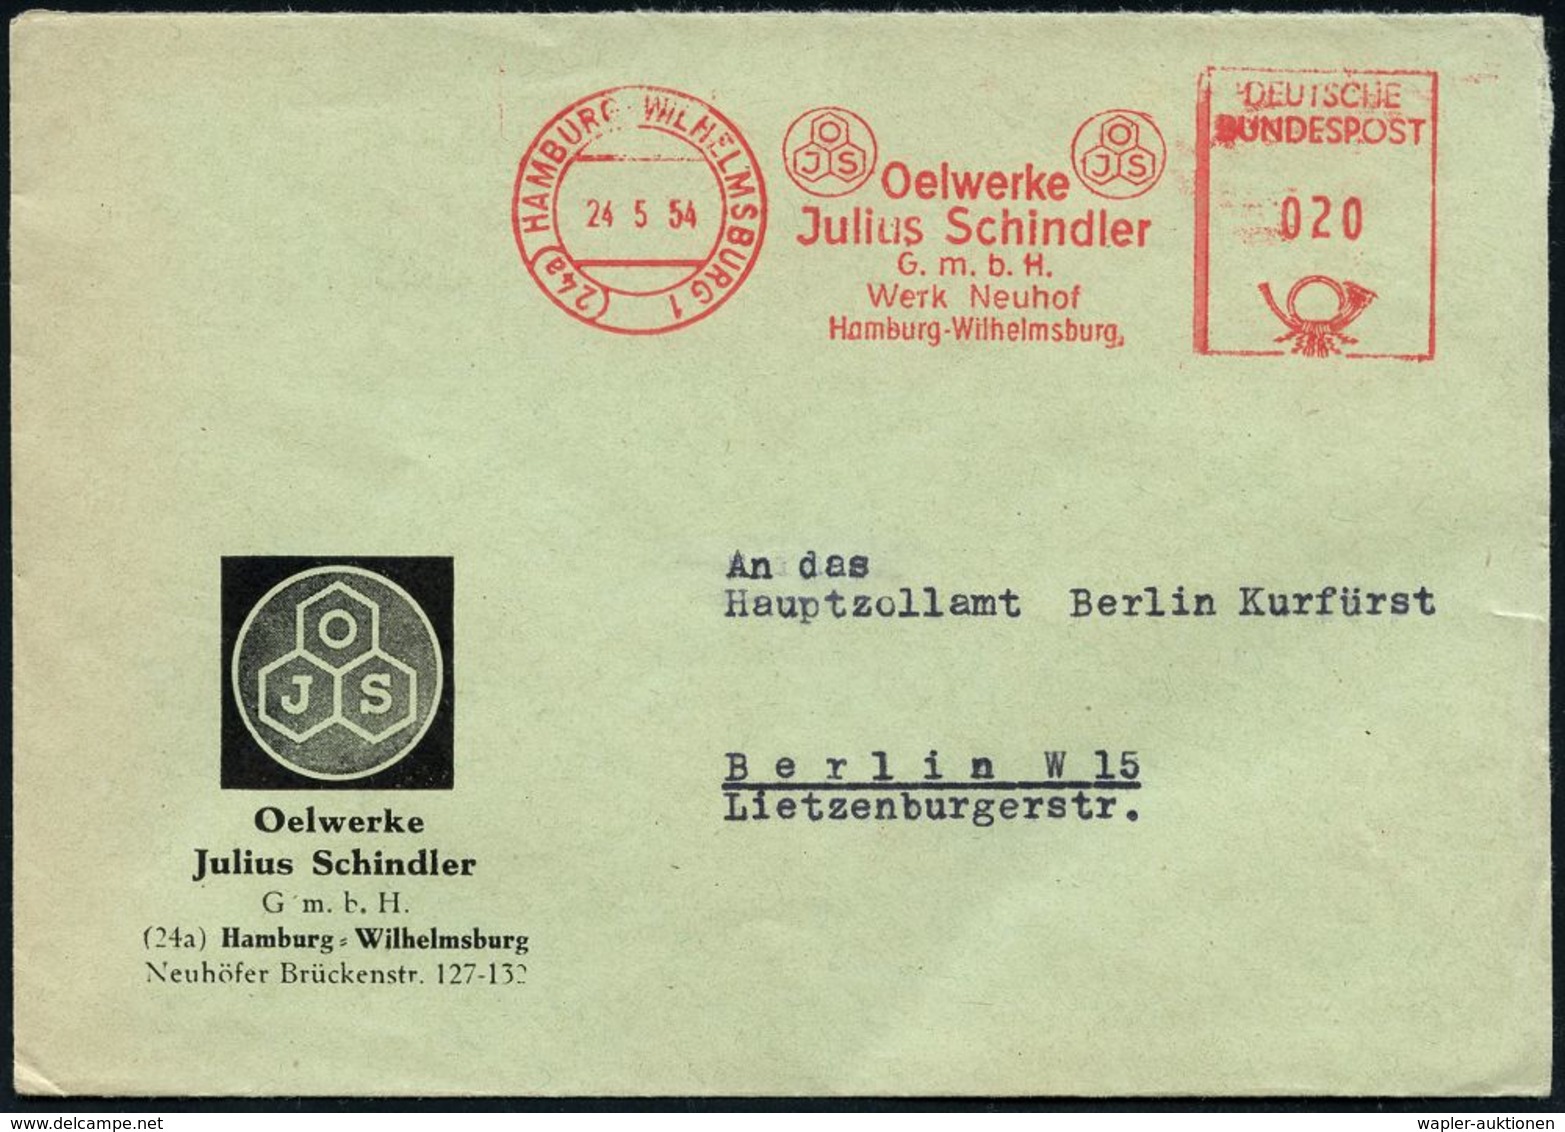 ERDÖL / PROSPEKTIERUNG & GEWINNUNG : (24a) HAMBURG-WILHELMSBURG 1/ OJS/ Oelwerke/ Julius Schindler.. 1954 (24.5.) AFS (M - Erdöl